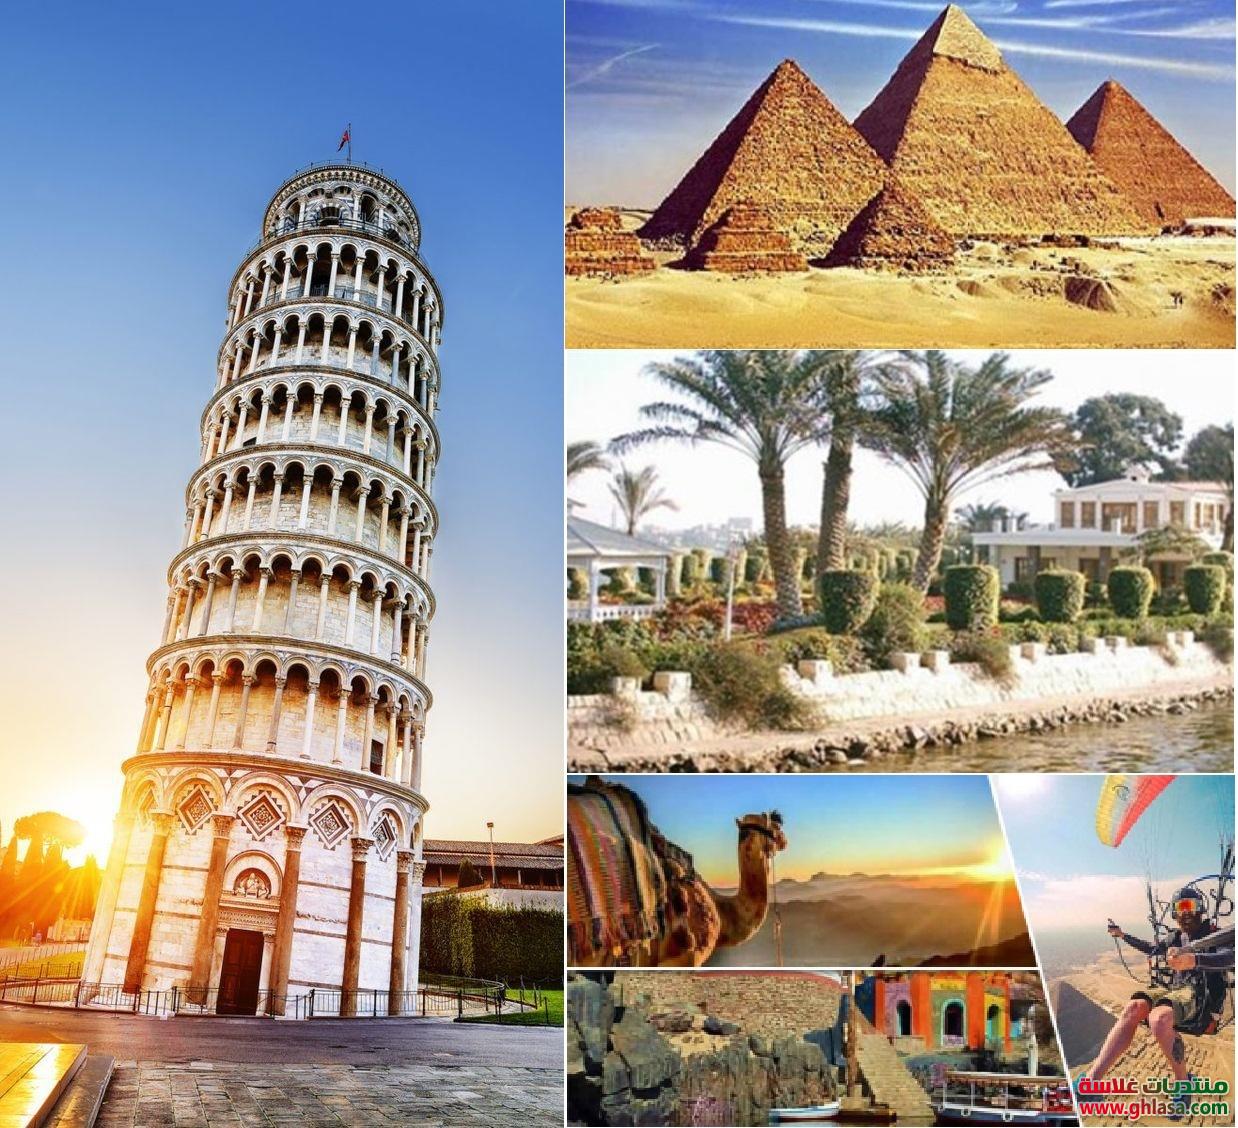 بحث عن السياحة و انواع السياحة في مصر و مقاومات السياحة جاهز للطبع do.php?img=75088